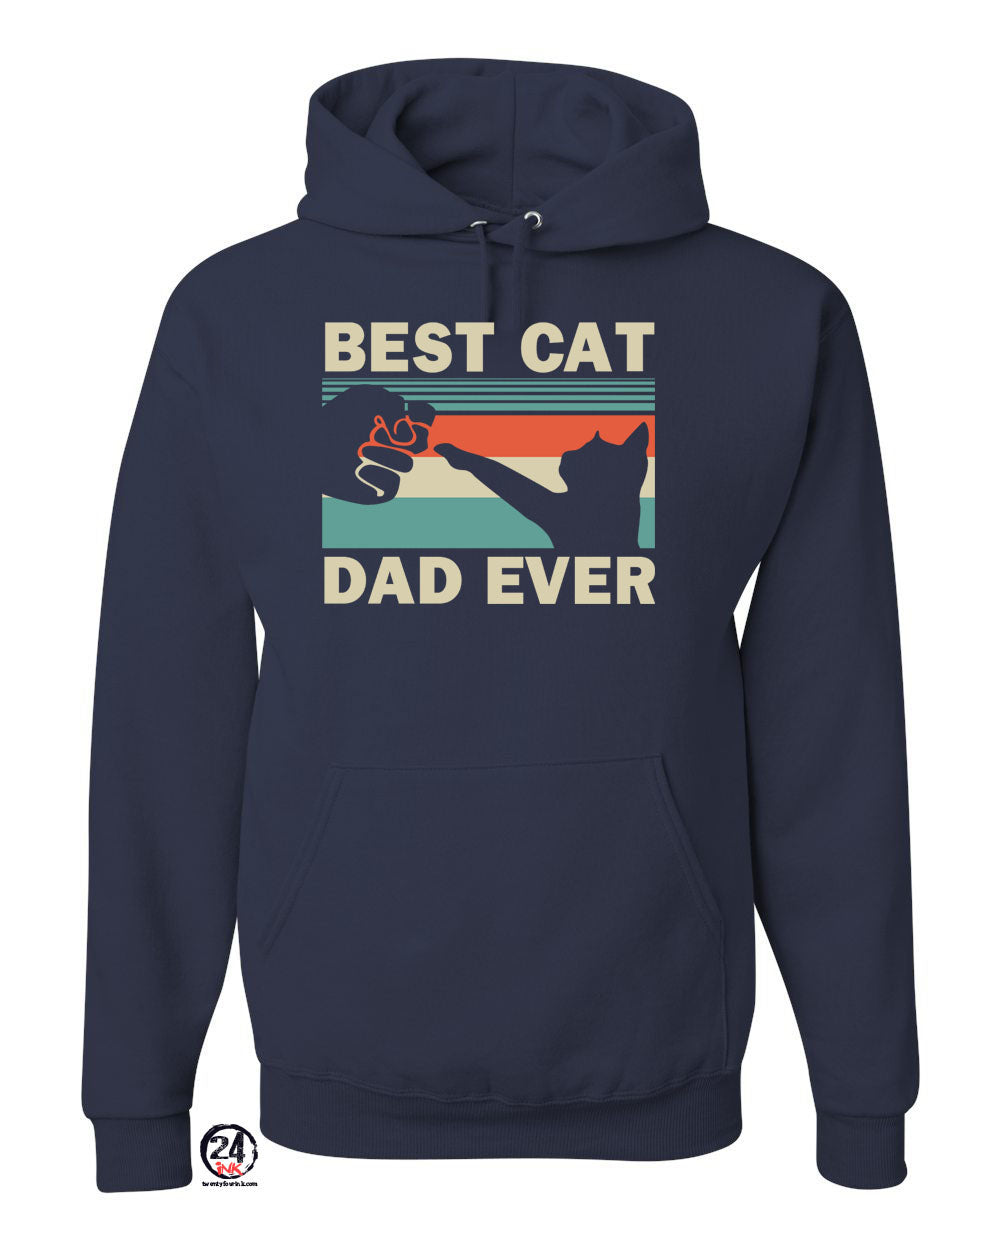 Best cat dad ever Hooded Sweatshirt